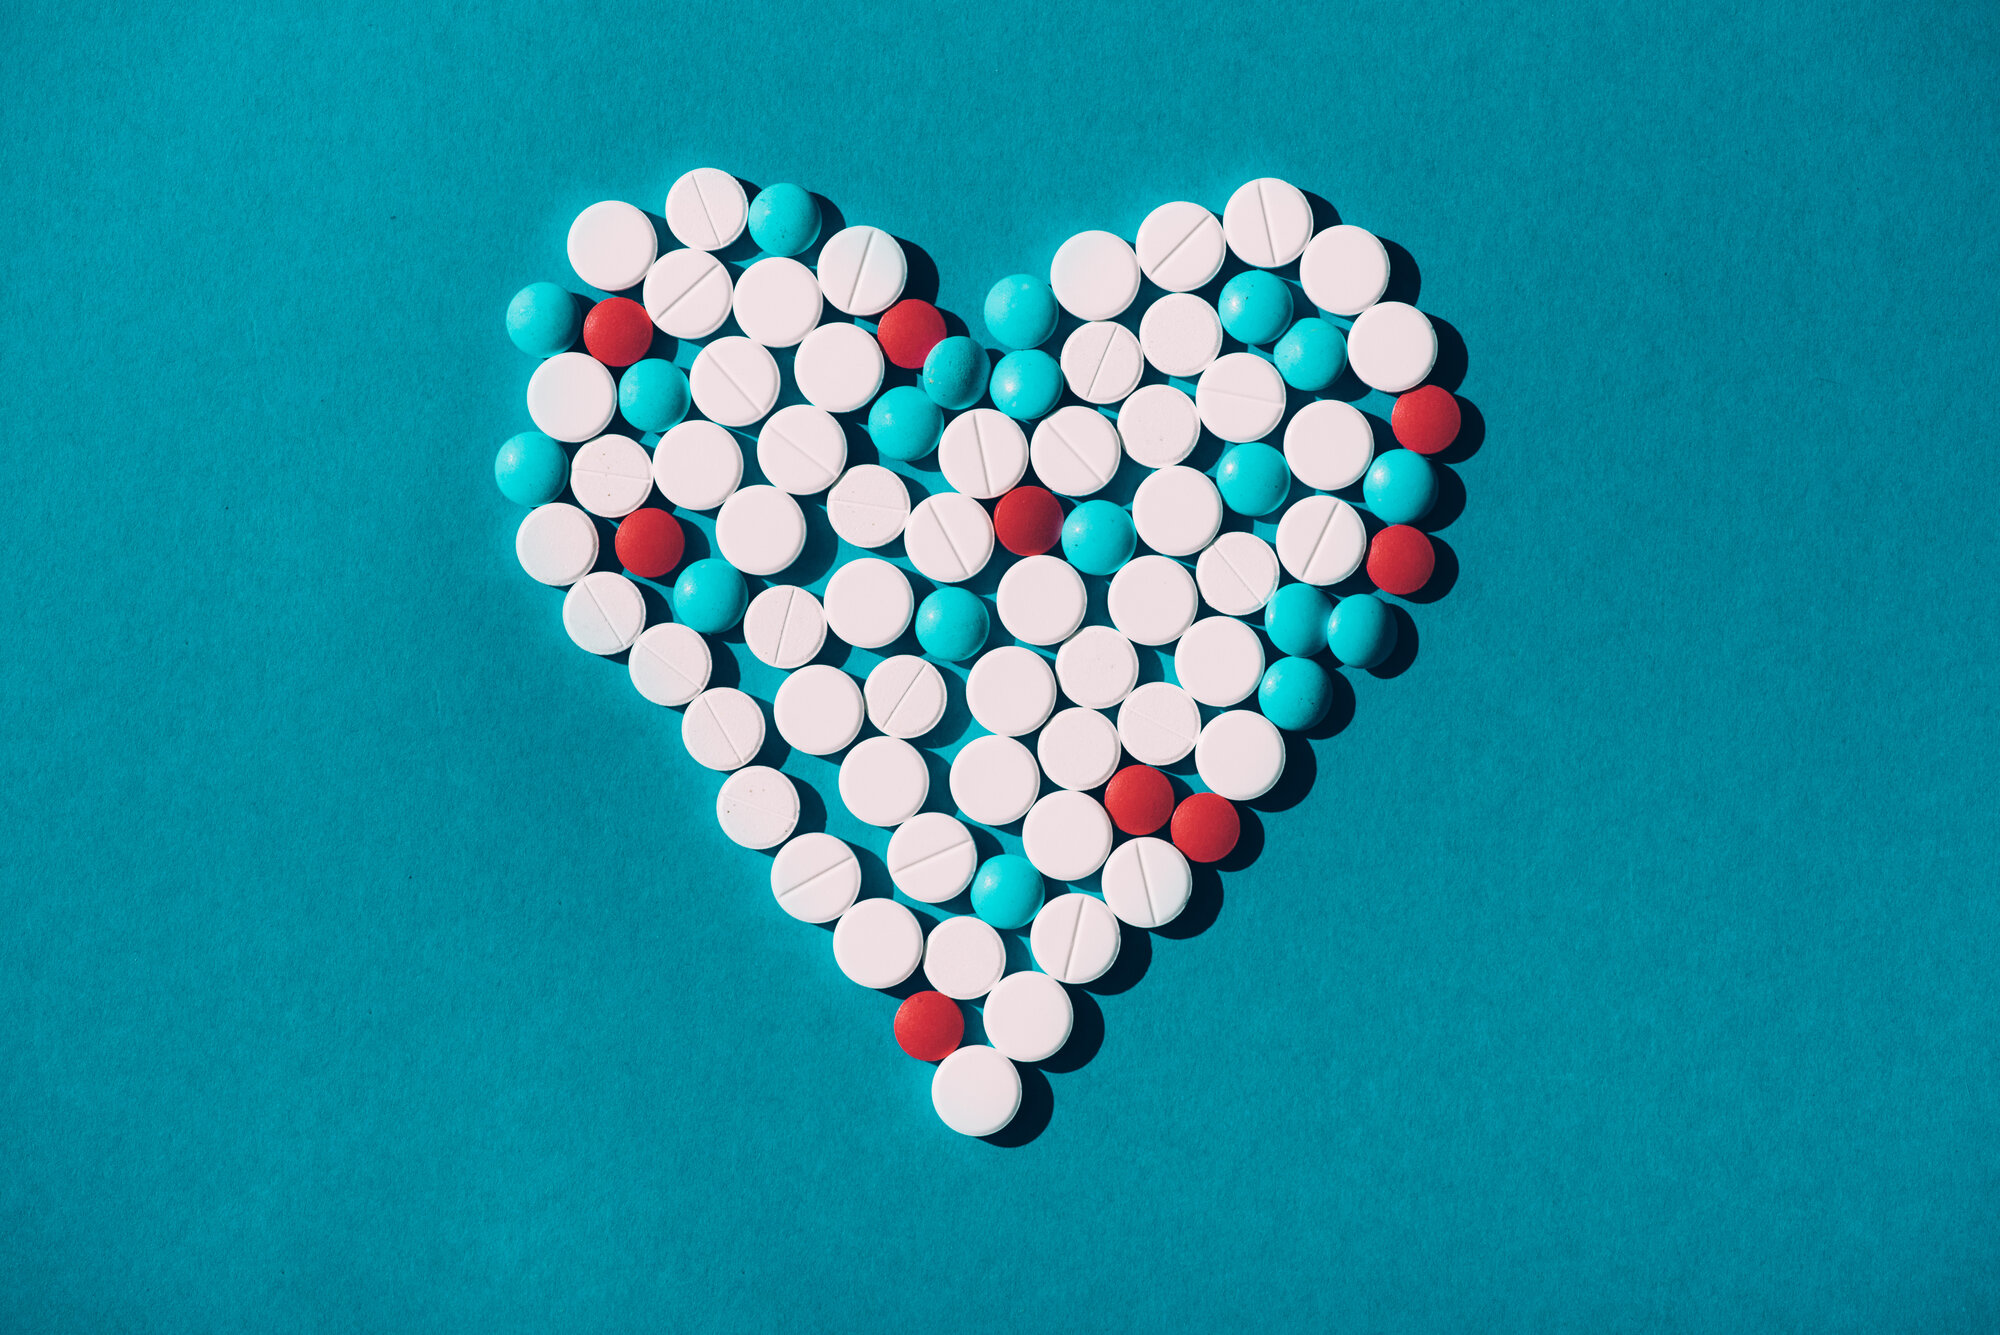 Bildet viser et hjerte laget av tabletter i hvitt, rødt og turkis